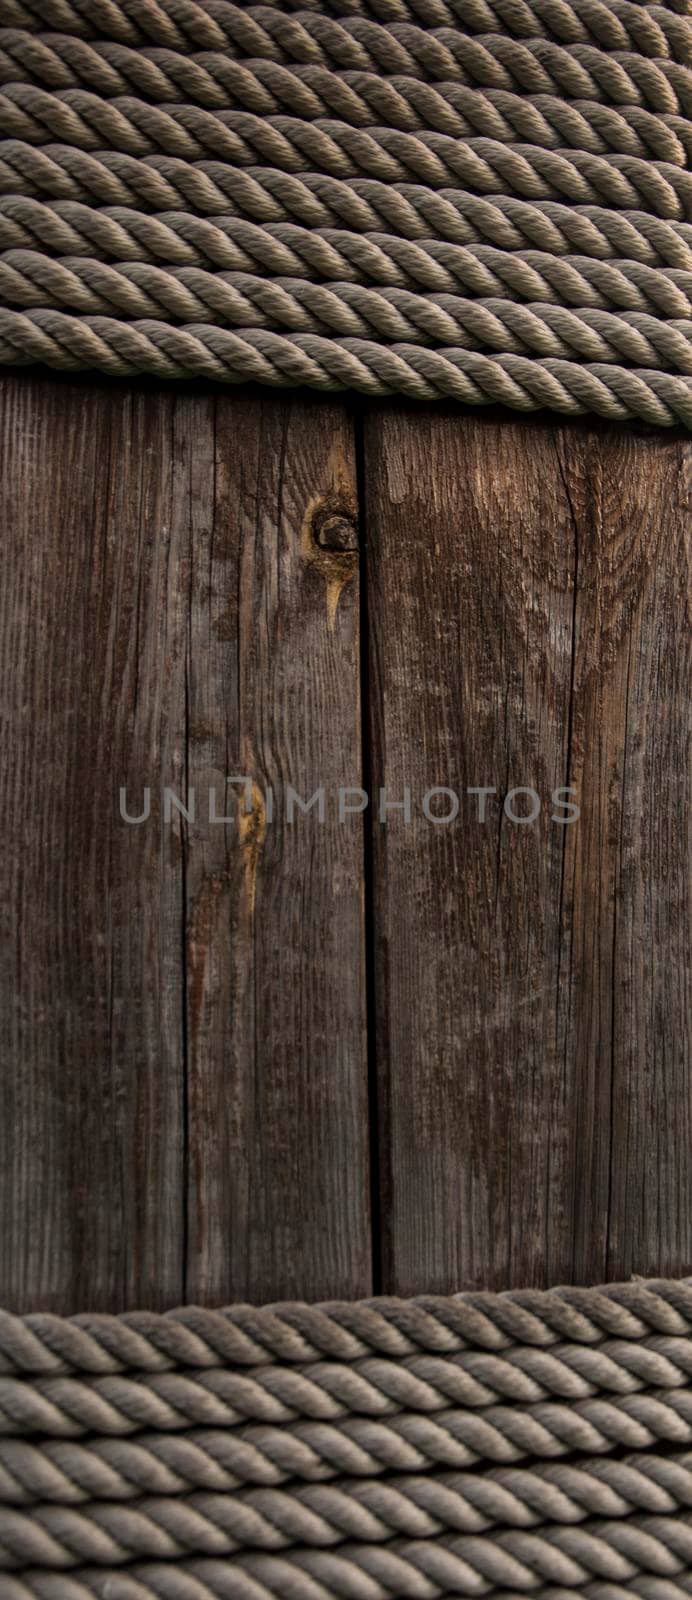 Hemp rope on weathered wood background